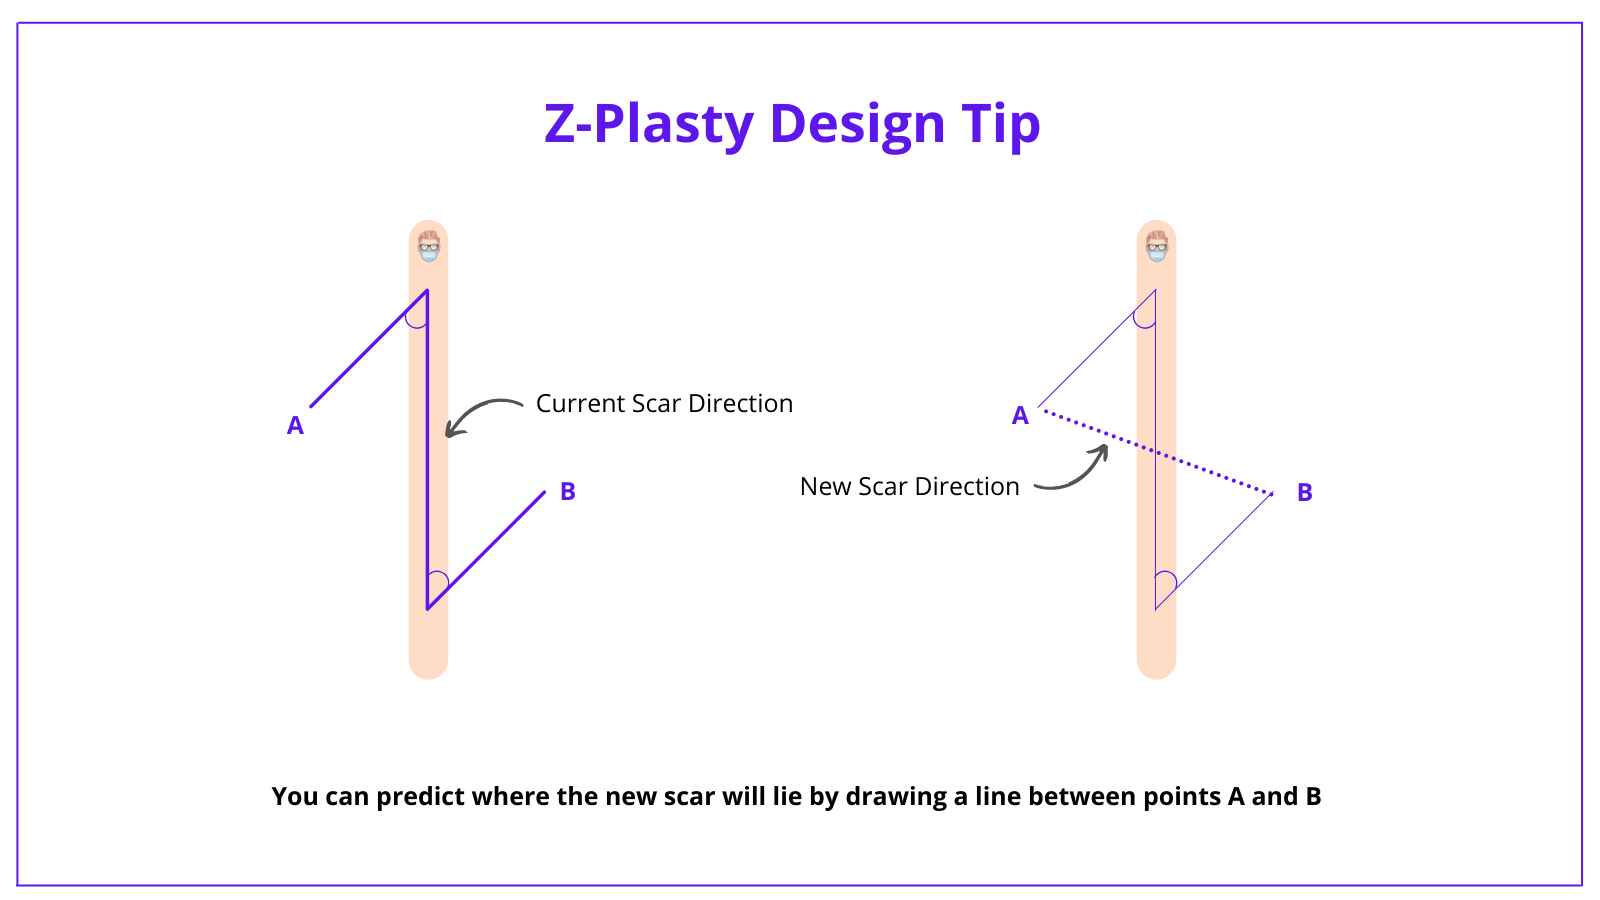 Z-plasty, Z-plasty flap, z-plasty design, z-plasty technique, z-plasty complications